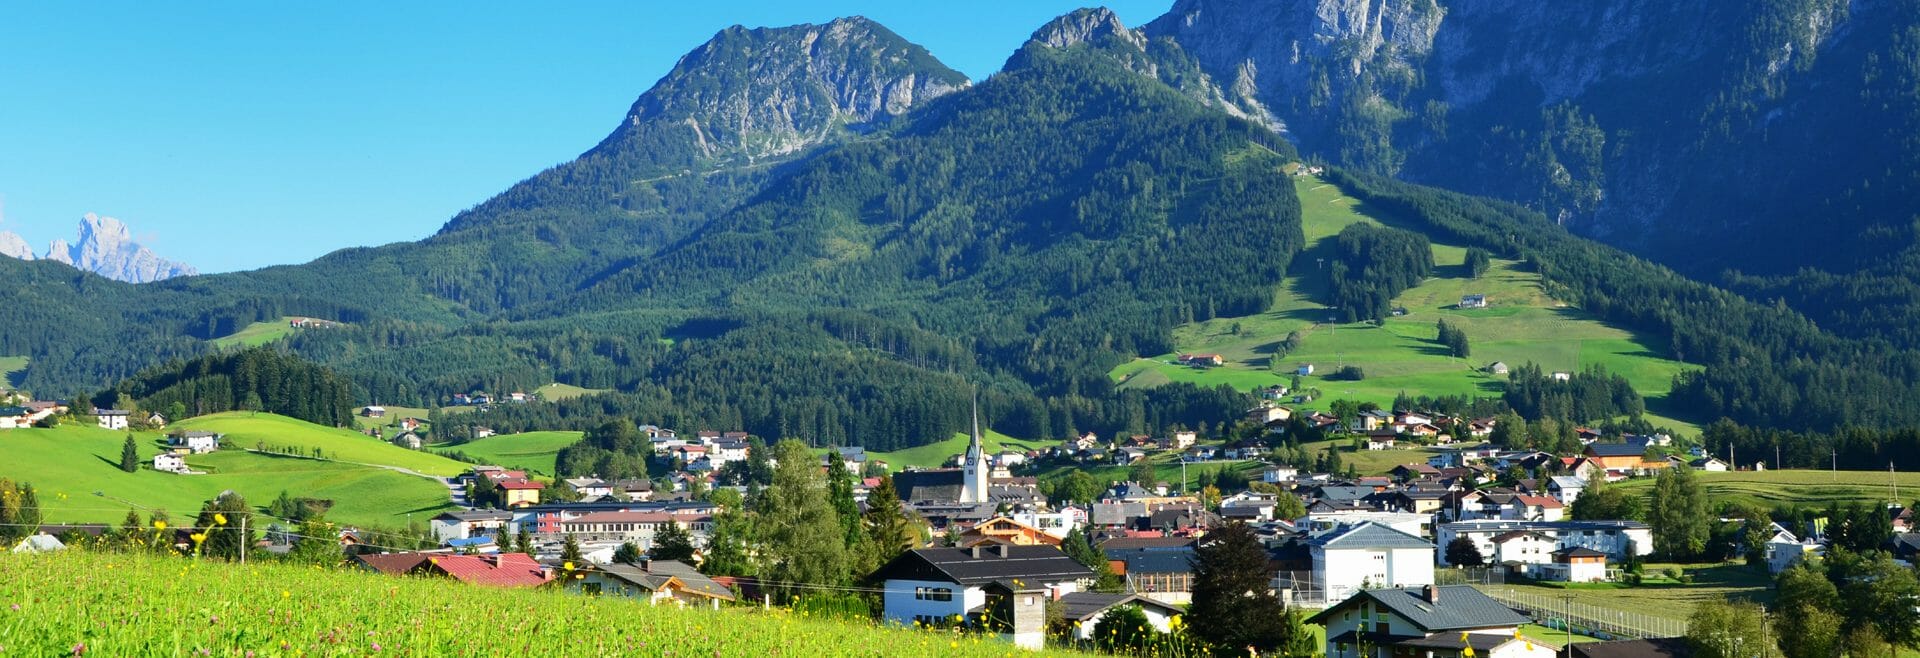 Blick auf Abtenau, grüne Wiese im Vordergrund, bewaldete Berge im Hintergrund